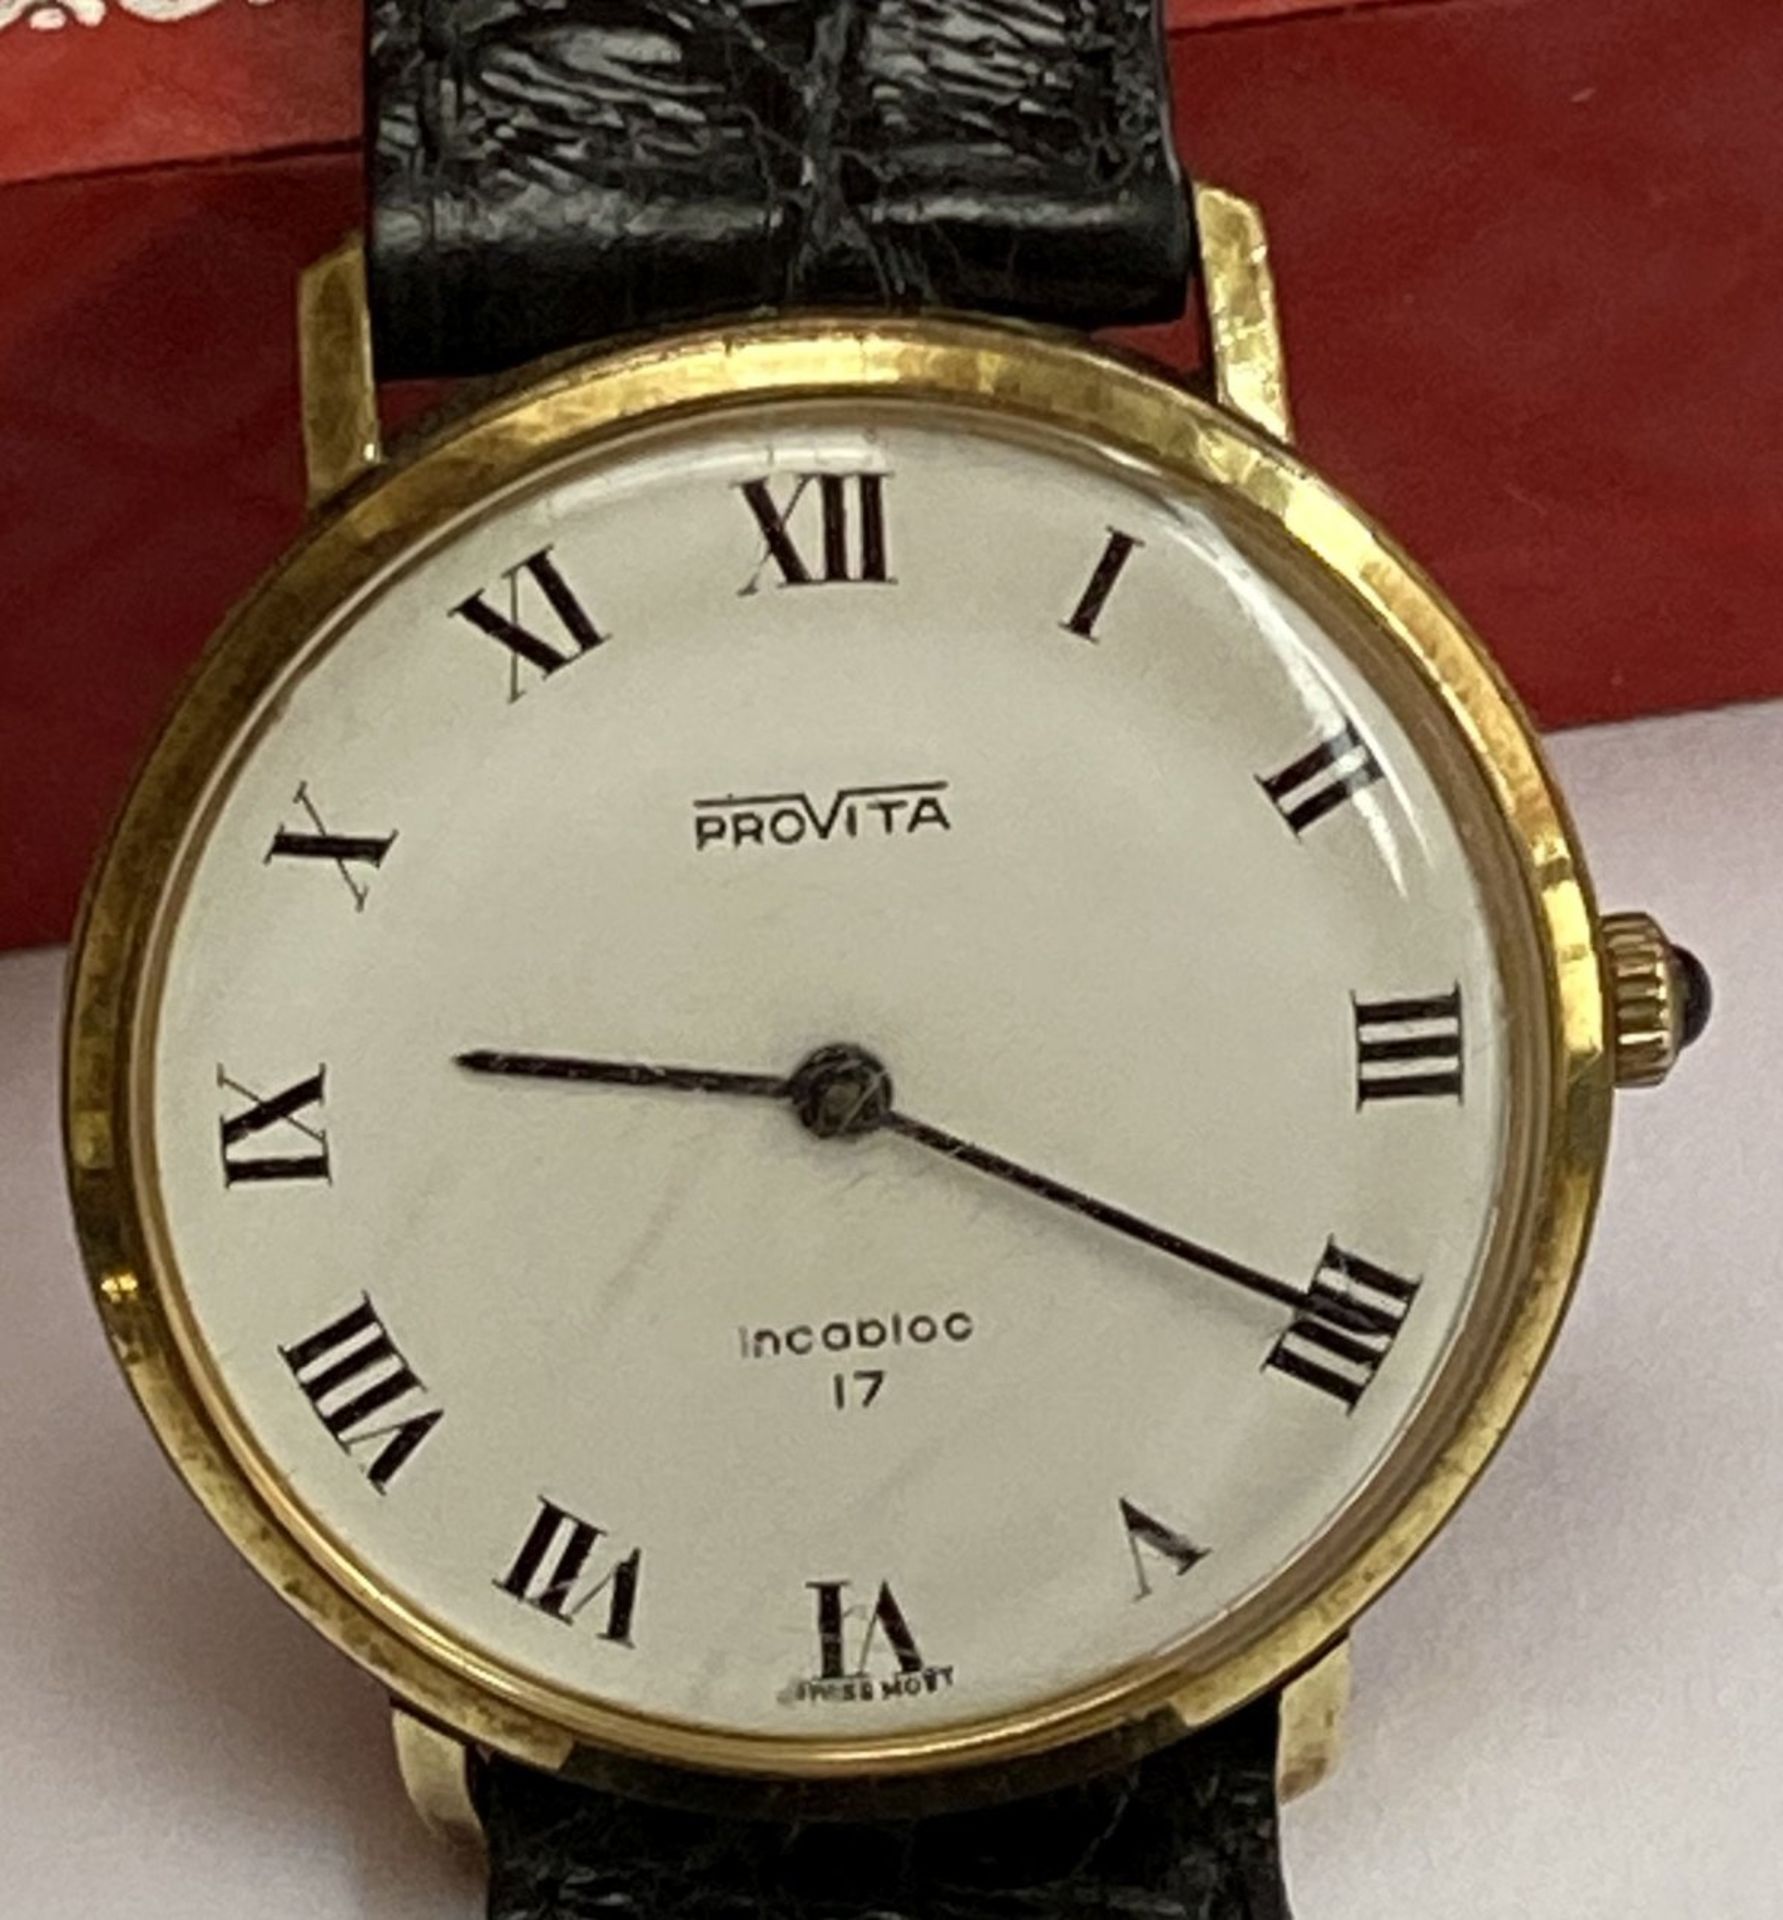 Vintage Herrenarmbanduhr "Provita" Incabloc 17, flache Form, Gehäuse vergoldet, lässt sich nicht - Image 2 of 6